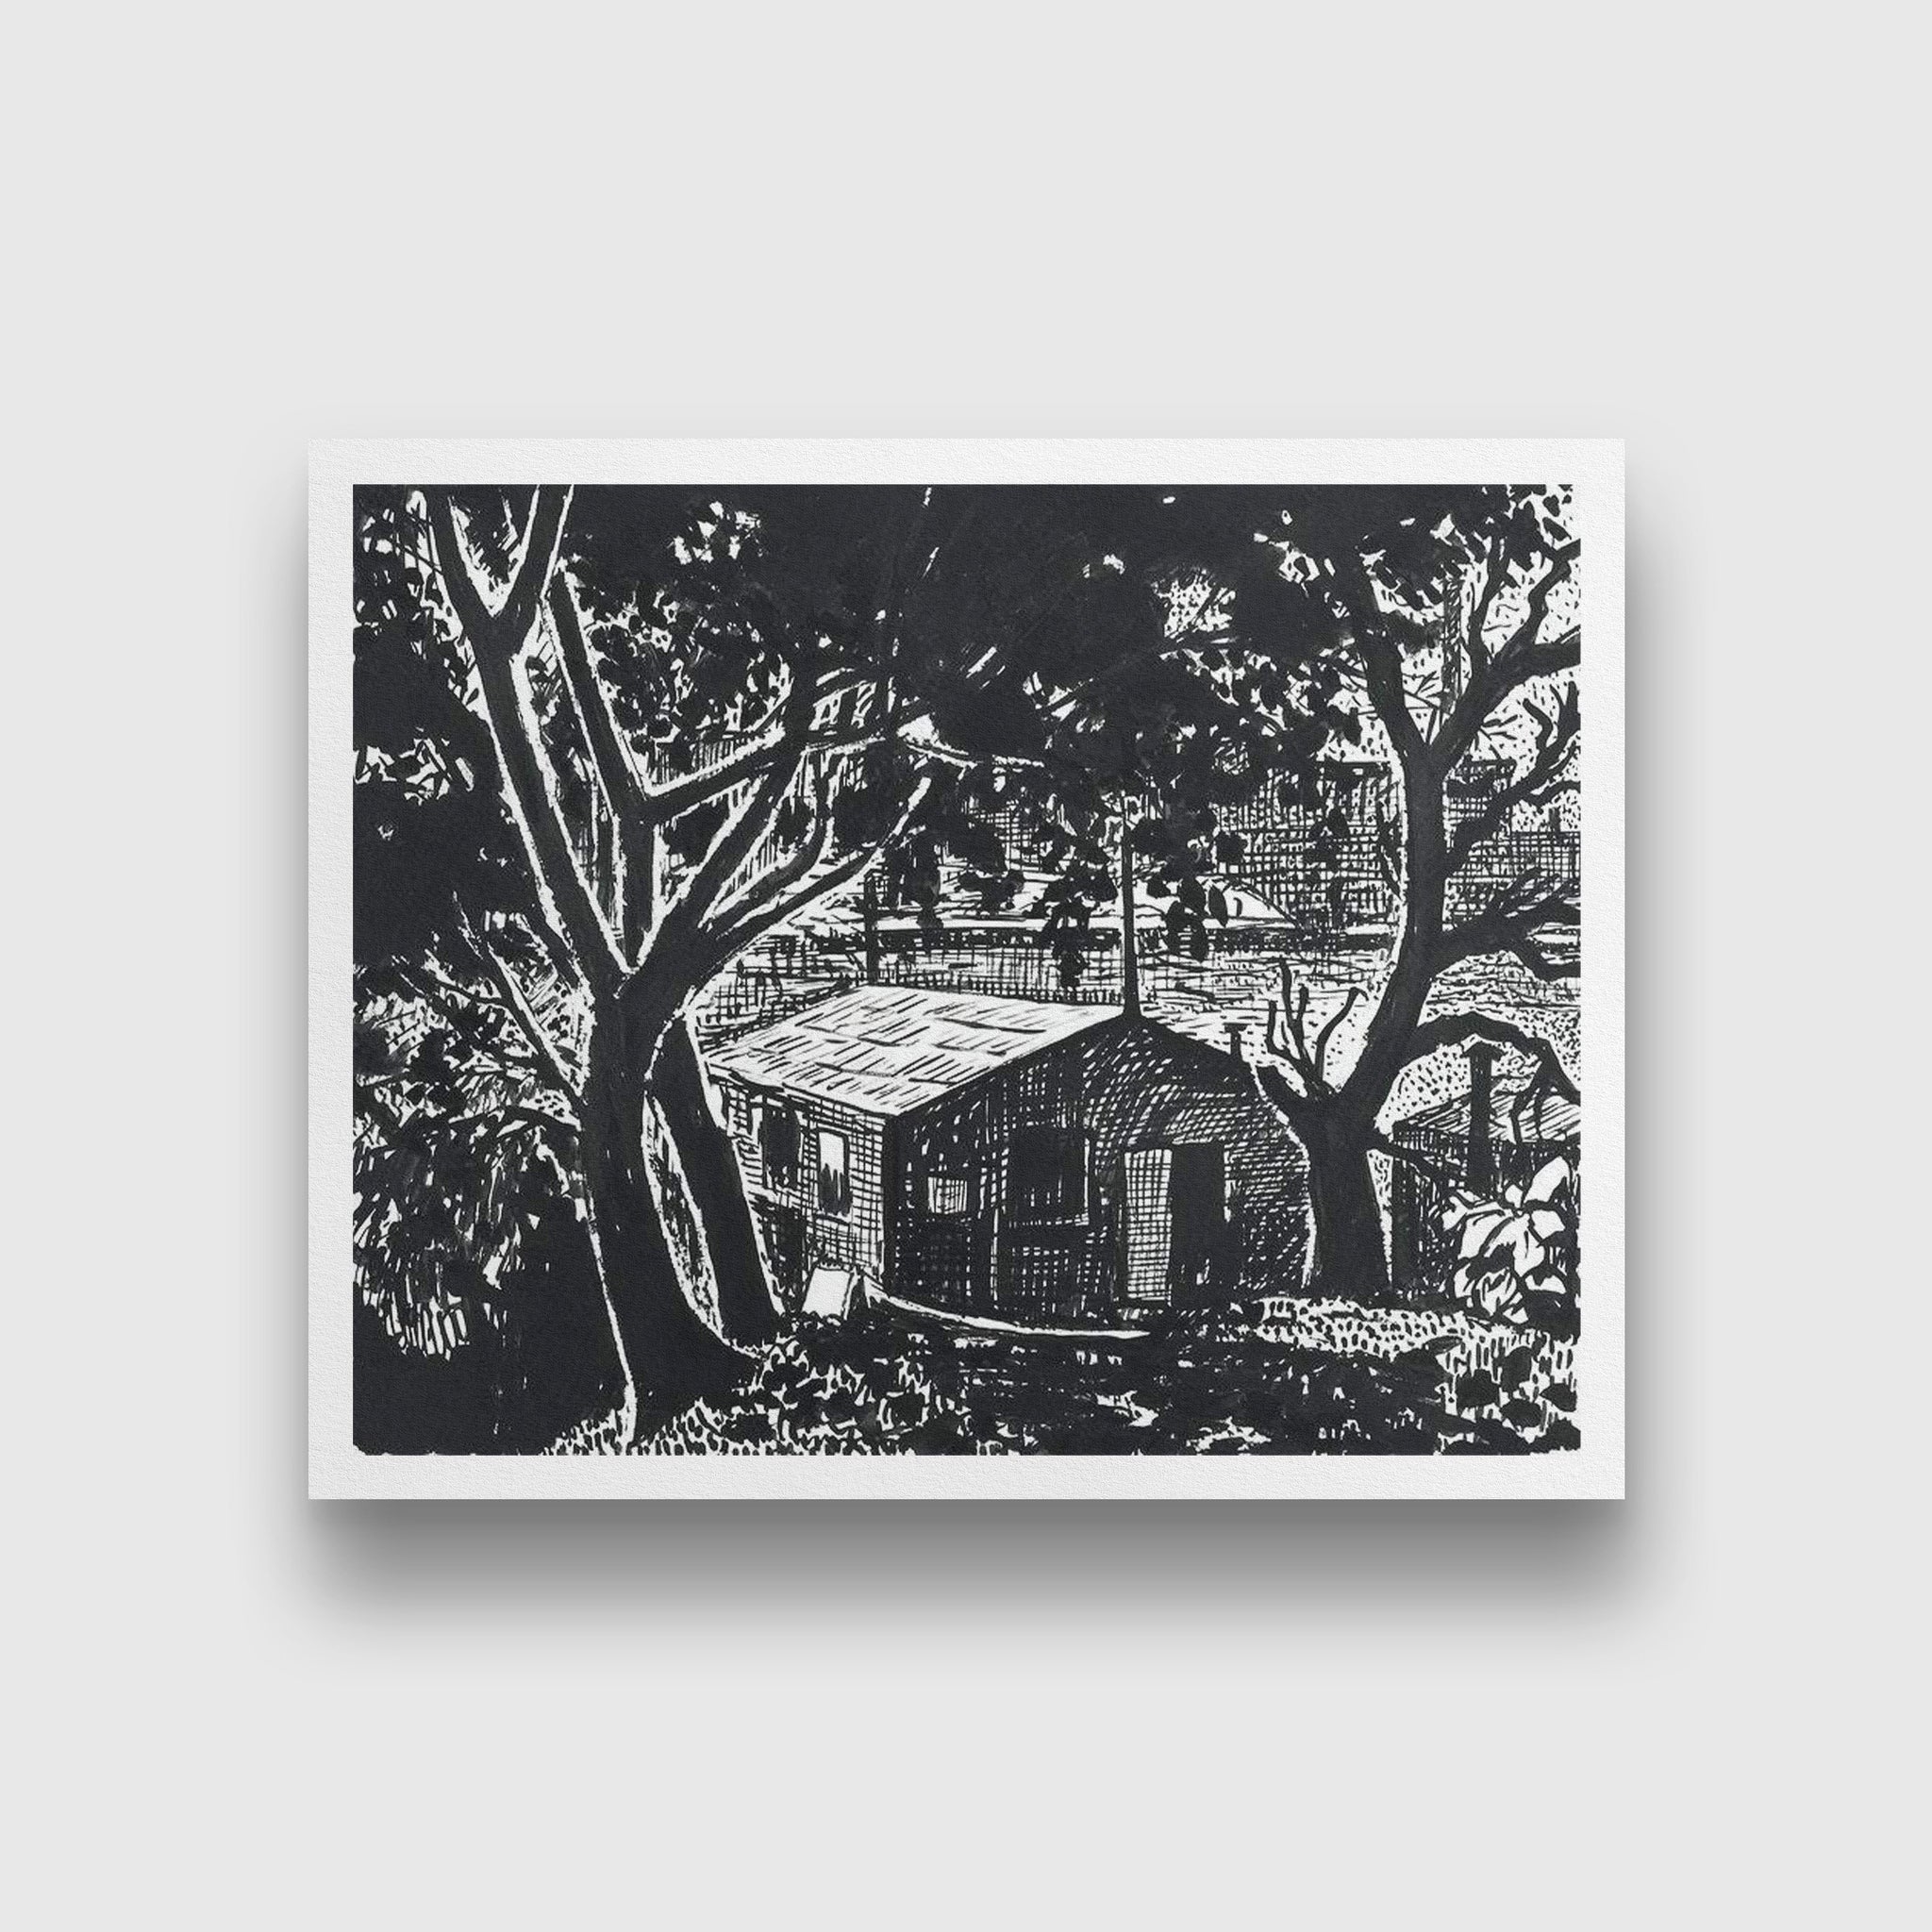 House in the Woods drawing Henry Lyman Saÿen Painting - MeriDeewar - MeriDeewar